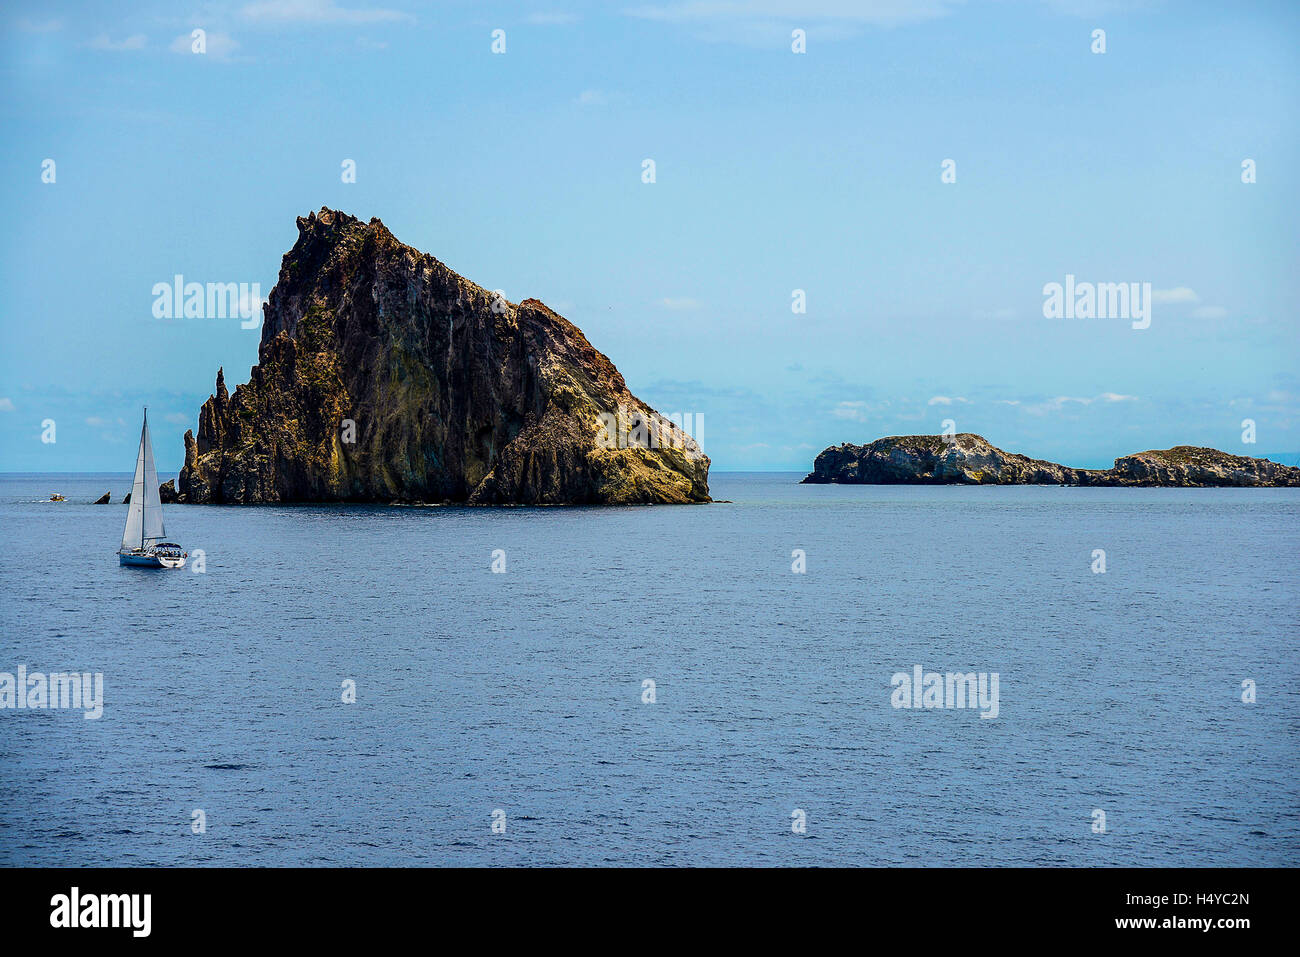 Italien Sizilien Liparischen Inseln Panarea der Insel von Dattilo Insel Lisca Bianca auf der rechten Seite und links Stockfoto